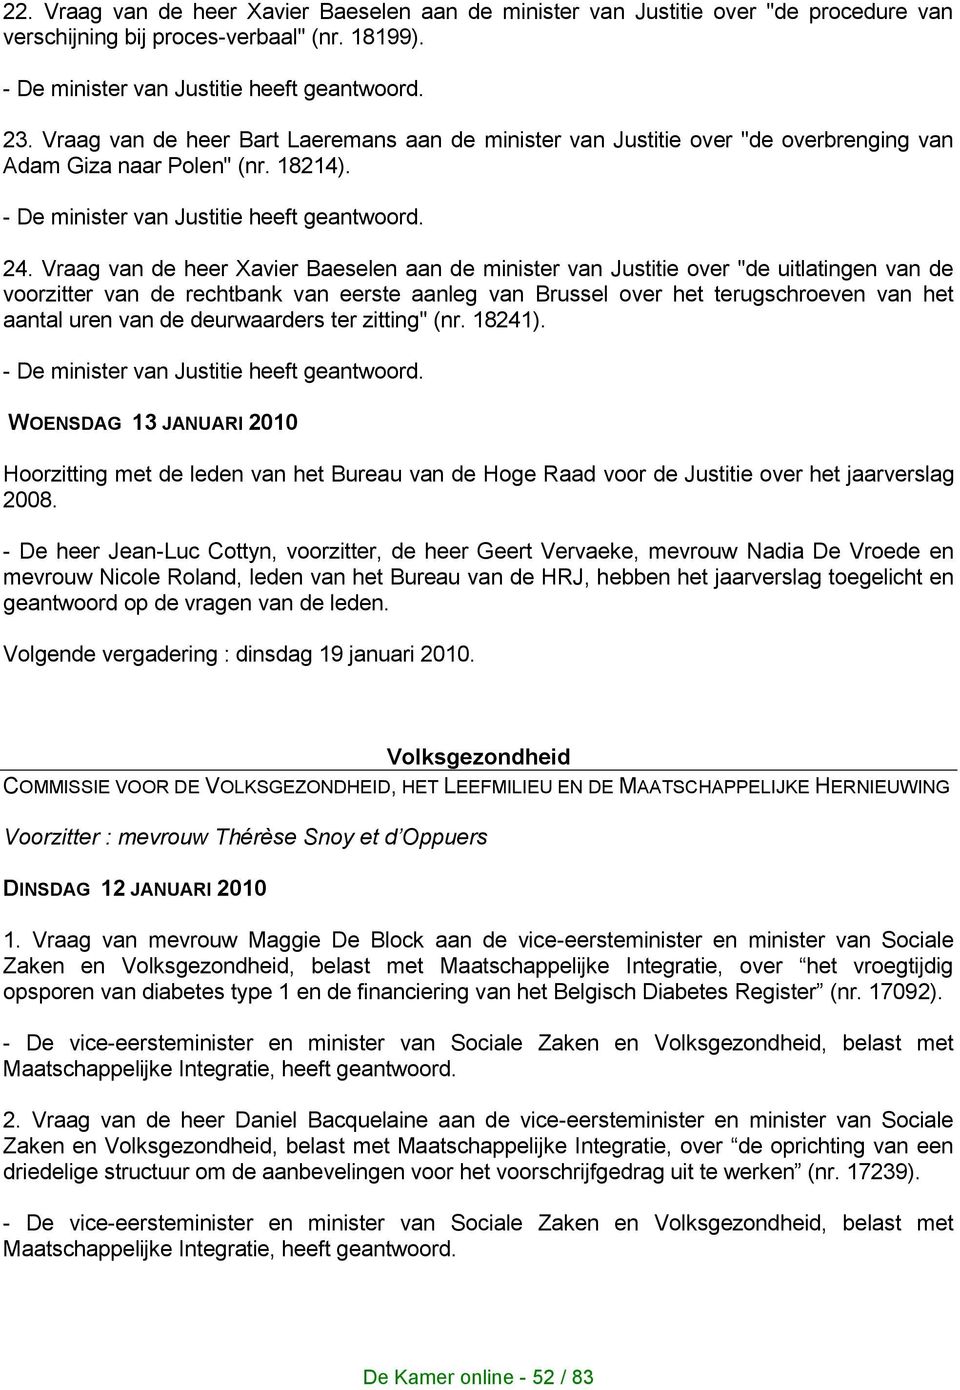 Vraag van de heer Xavier Baeselen aan de minister van Justitie over "de uitlatingen van de voorzitter van de rechtbank van eerste aanleg van Brussel over het terugschroeven van het aantal uren van de